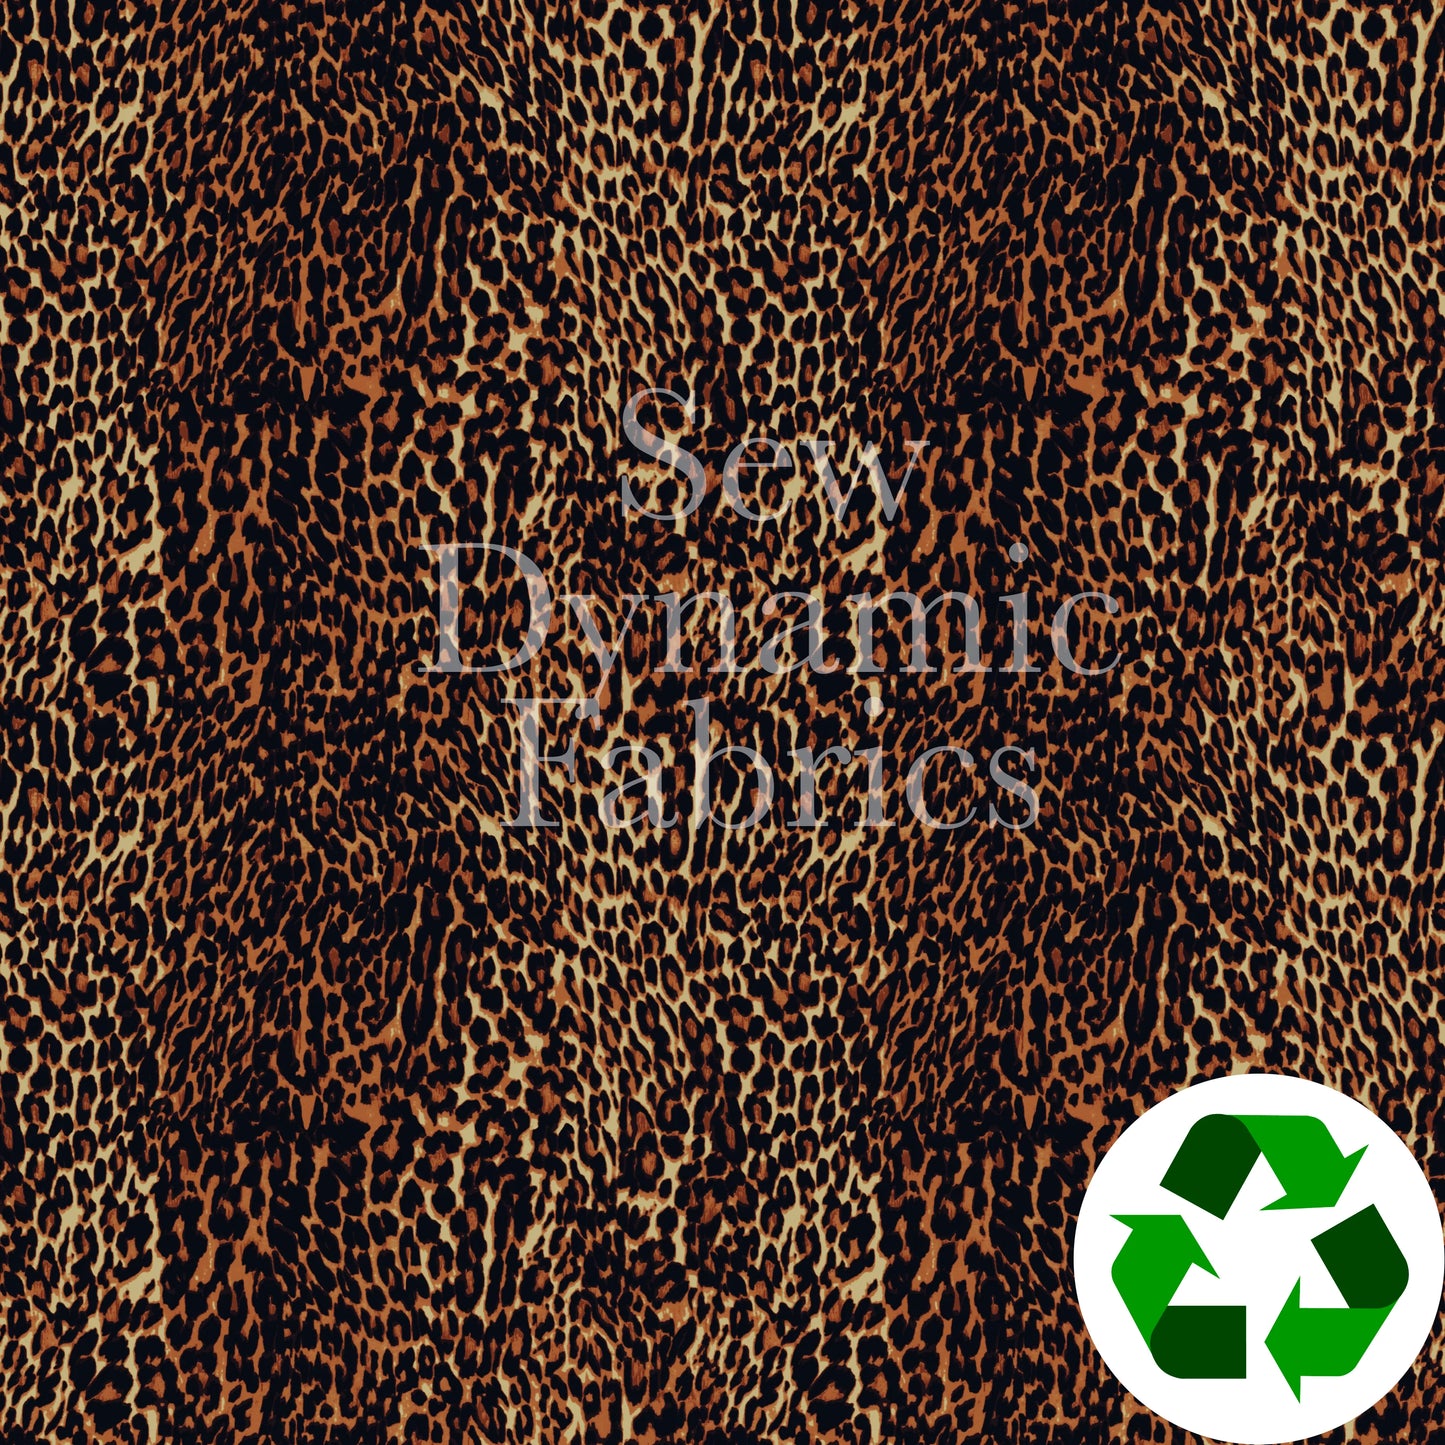 Jersey Knit: Leopard